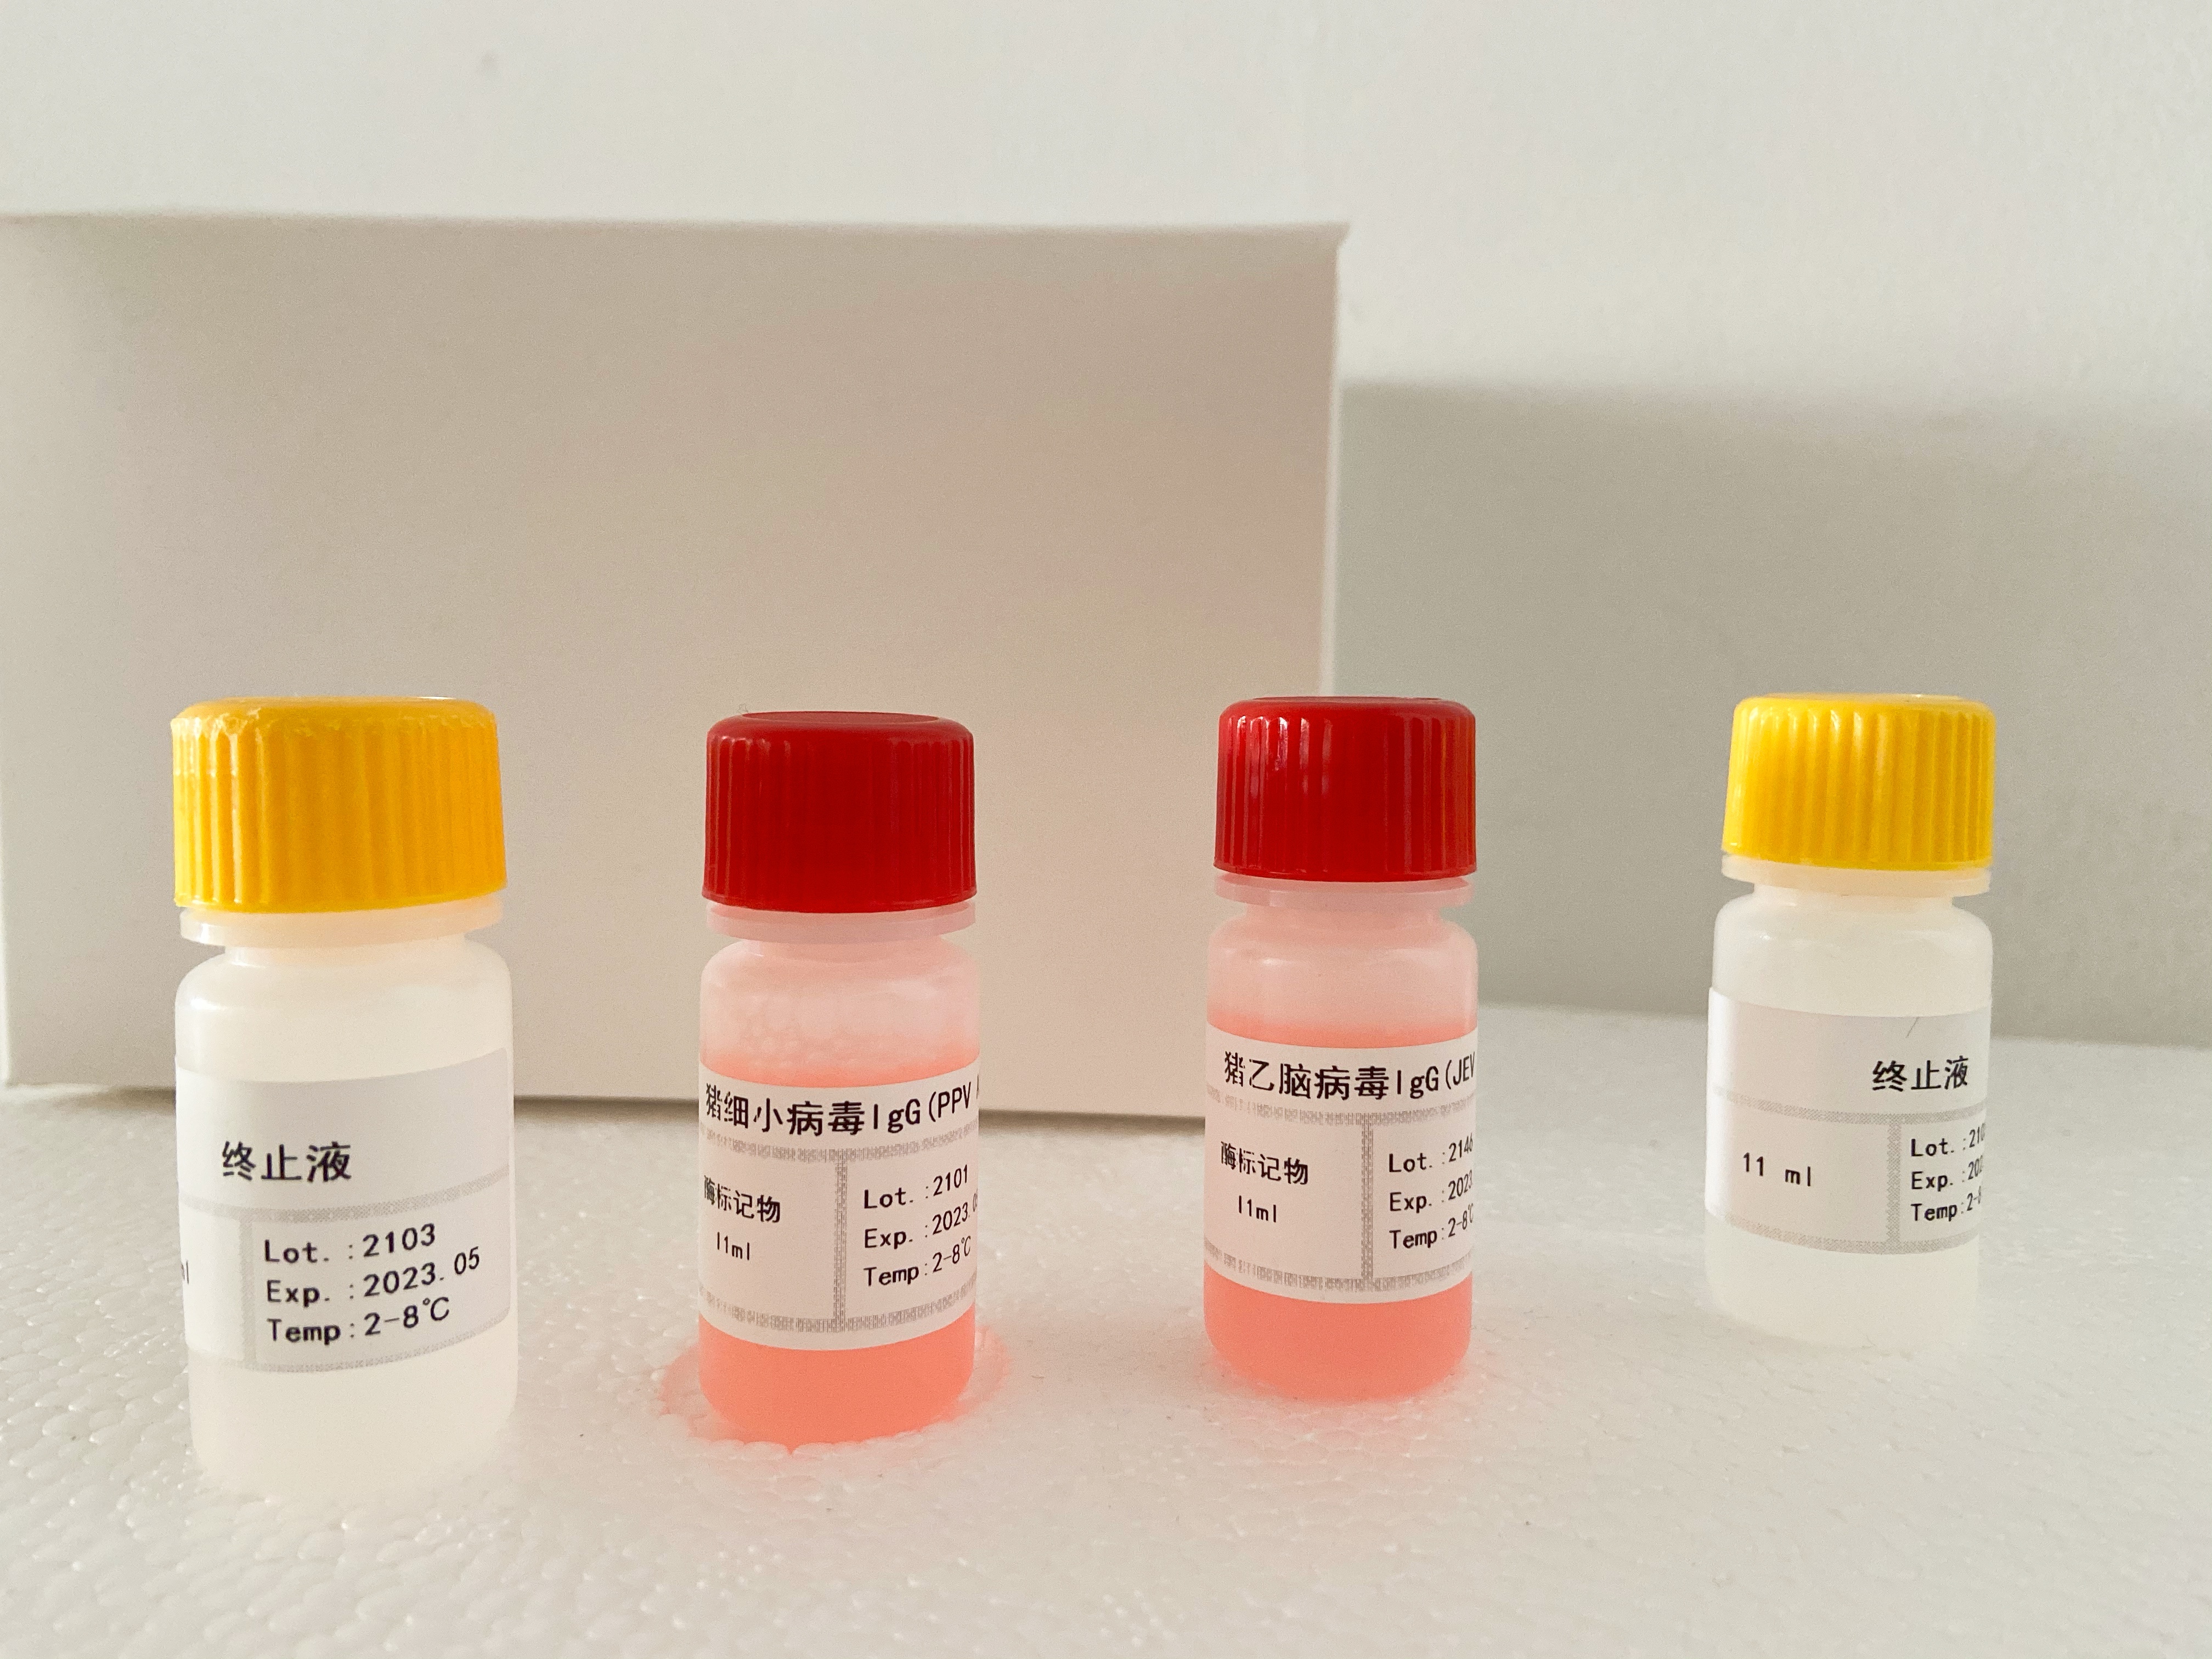 p53,小鼠检测试剂盒